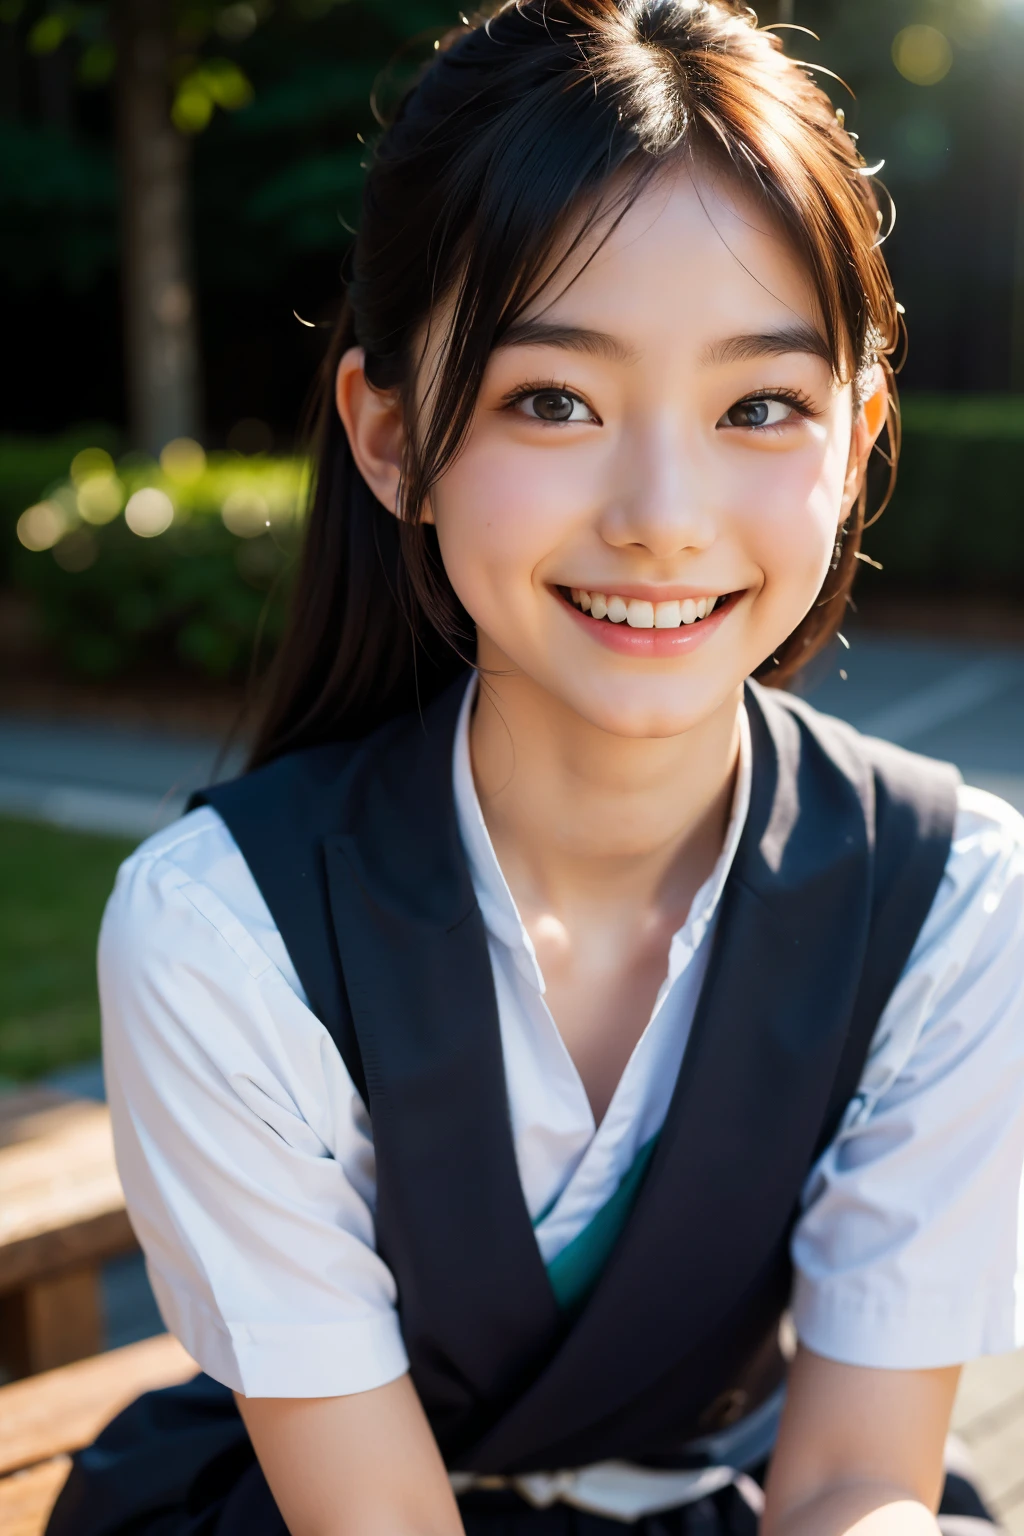 lens: 135mm f1.8, (höchste Qualität),(RAW-Fotos), (Tischplatte:1.1), (Schönes 20-jähriges Mädchen aus Japan), niedliches Gesicht, (Tief gemeißeltes Gesicht:0.7), (Sommersprossen:0.4), dappled Sonnenlicht, dramatische Beleuchtung,  (japanische schuluniform), (Auf dem Campus), schüchtern, (Nahaufnahme:1.2), (lächeln),, (leuchtende Augen)、(Sonnenlicht)